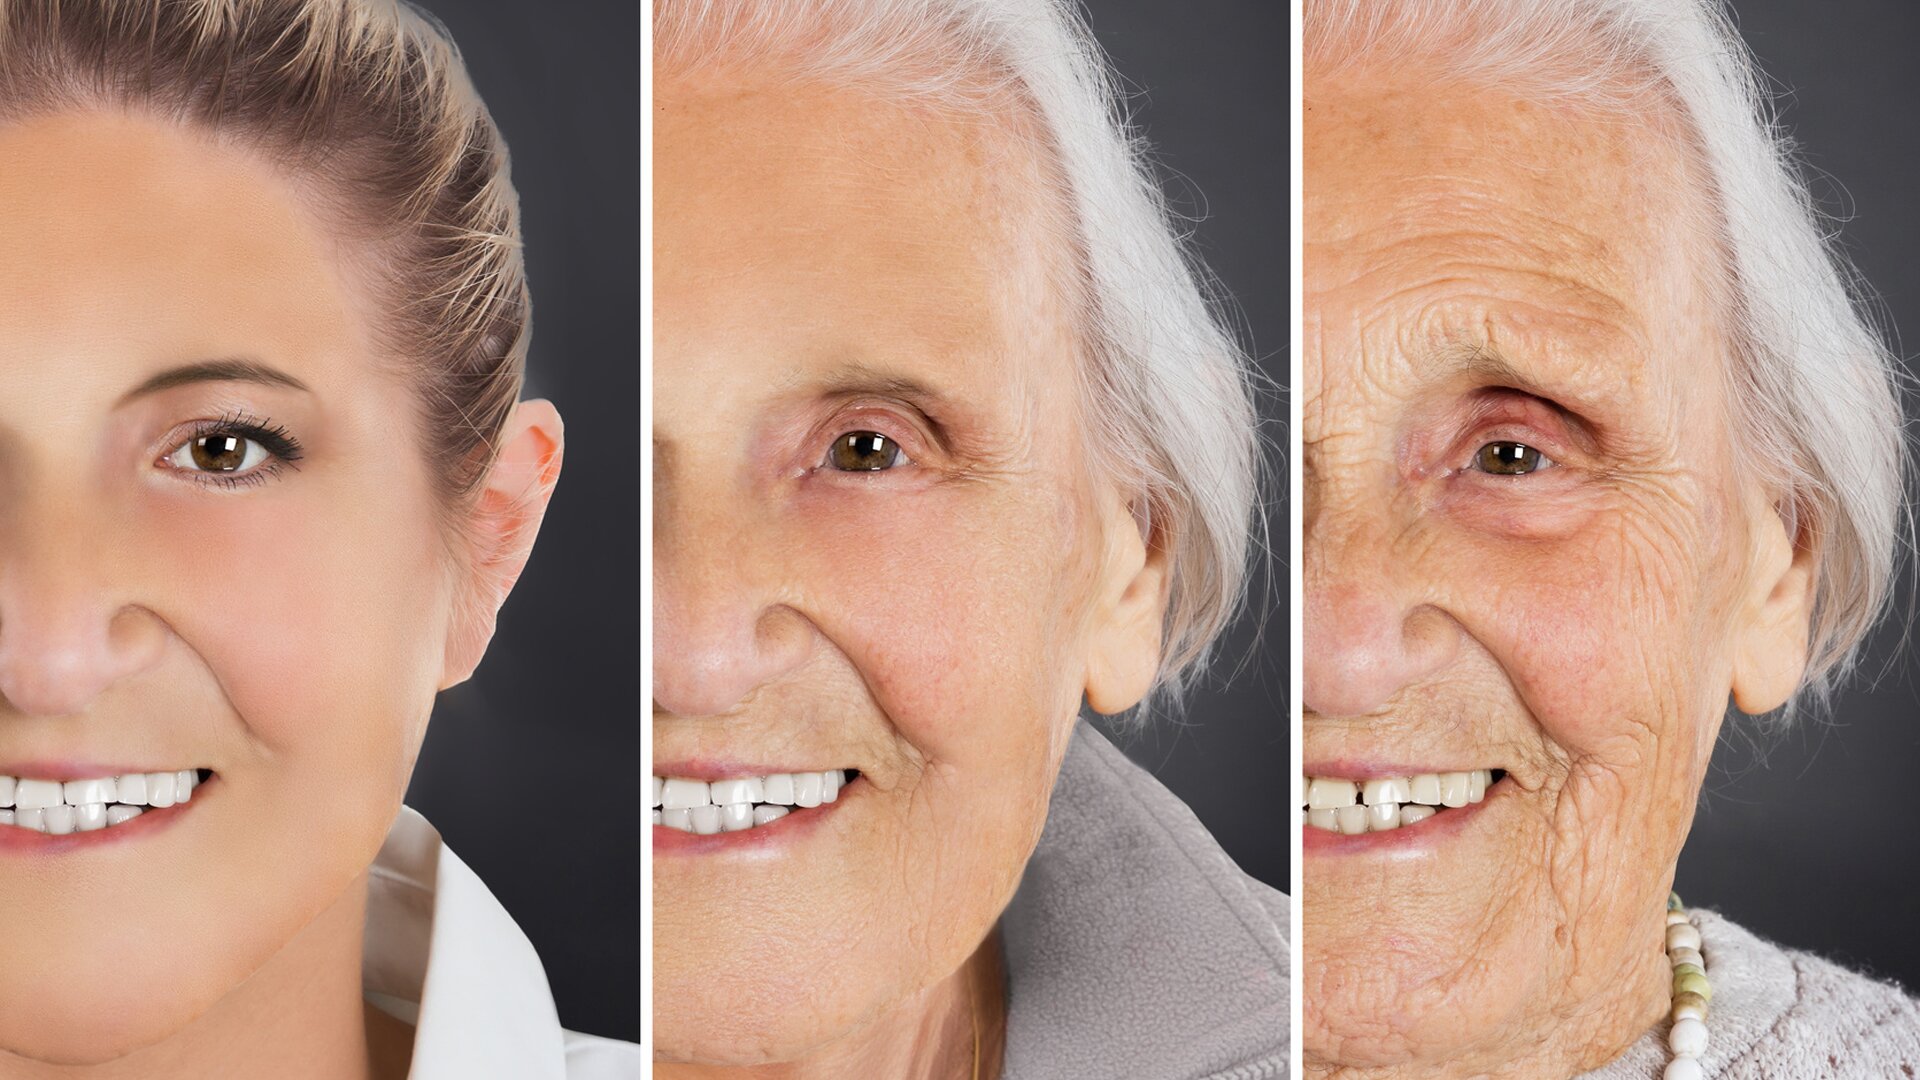 Ilustracja przedstawia trzy fotografie ułożone w pionie obok siebie. Fotografie pokazują jak z wiekiem zmienia się wygląd skóry. Zdjęcia przedstawiają fragmenty twarzy tej samej kobiety wykonane w różnym wieku. Na zdjęciu pierwszym od lewej widzimy twarz młodej kobiety. Ma ciemne zaczesane do tyłu włosy i gładką skórę. Zdjęcie środkowe przedstawia uśmiechniętą twarz tej samej osoby ale w średnim wieku. Ma siwe włosy i na twarzy widoczne są zmarszczki w kącikach oczu i ust. Zdjęcie trzecie od lewej przedstawia tę samą kobietę ale znacznie starszą. Na uśmiechniętej twarzy widoczne są głębokie zmarszczki.